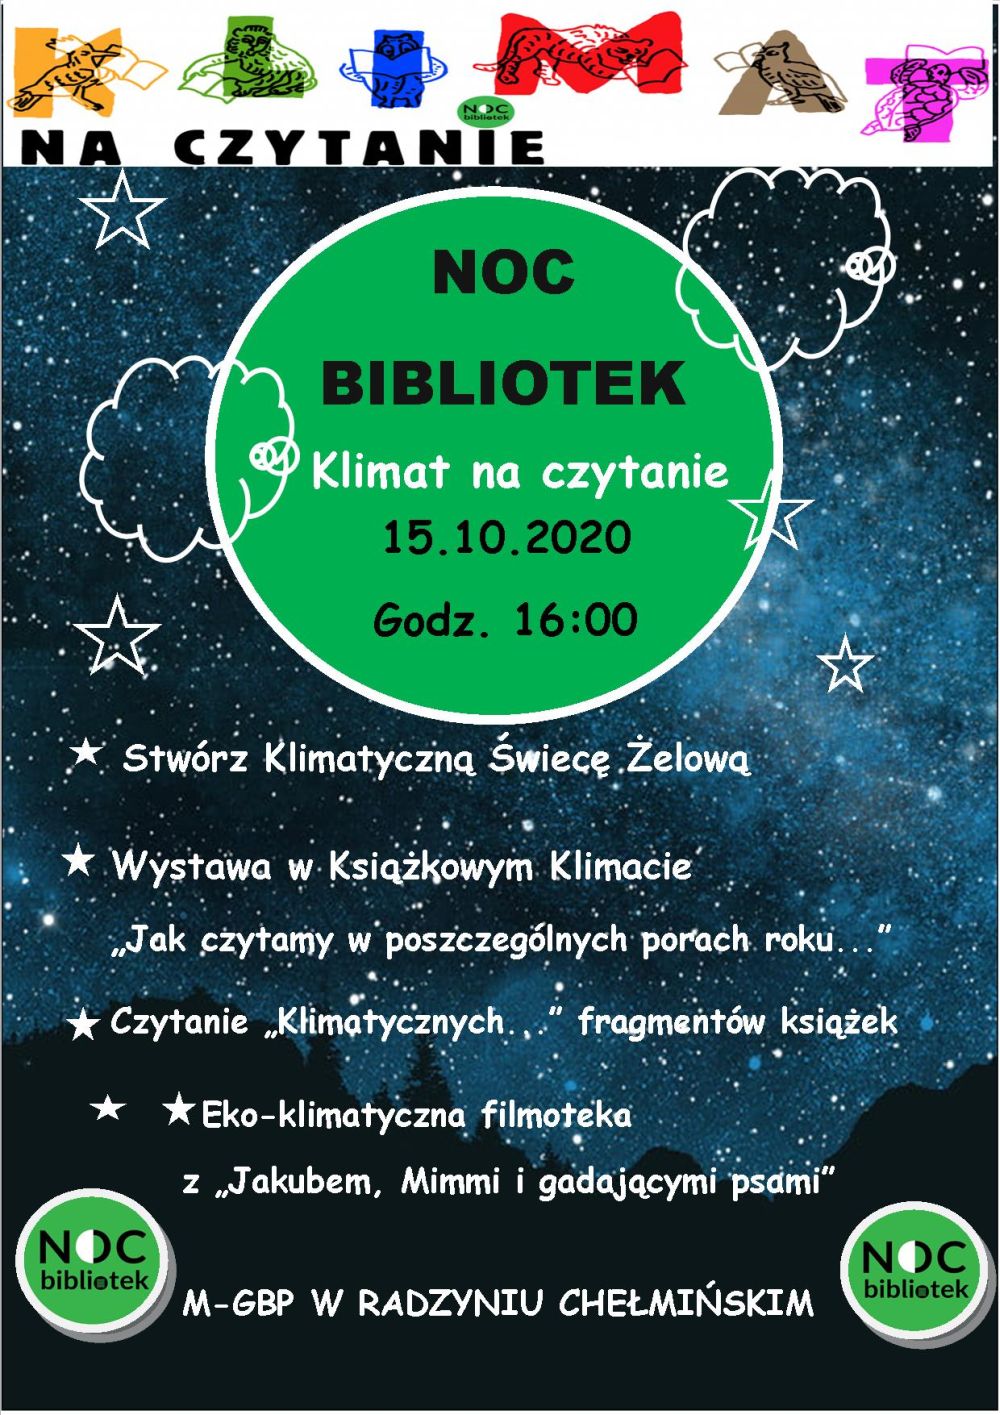 Plakat z informacją o nocy bibliotek która odbędzie się 15 października 2020 roku